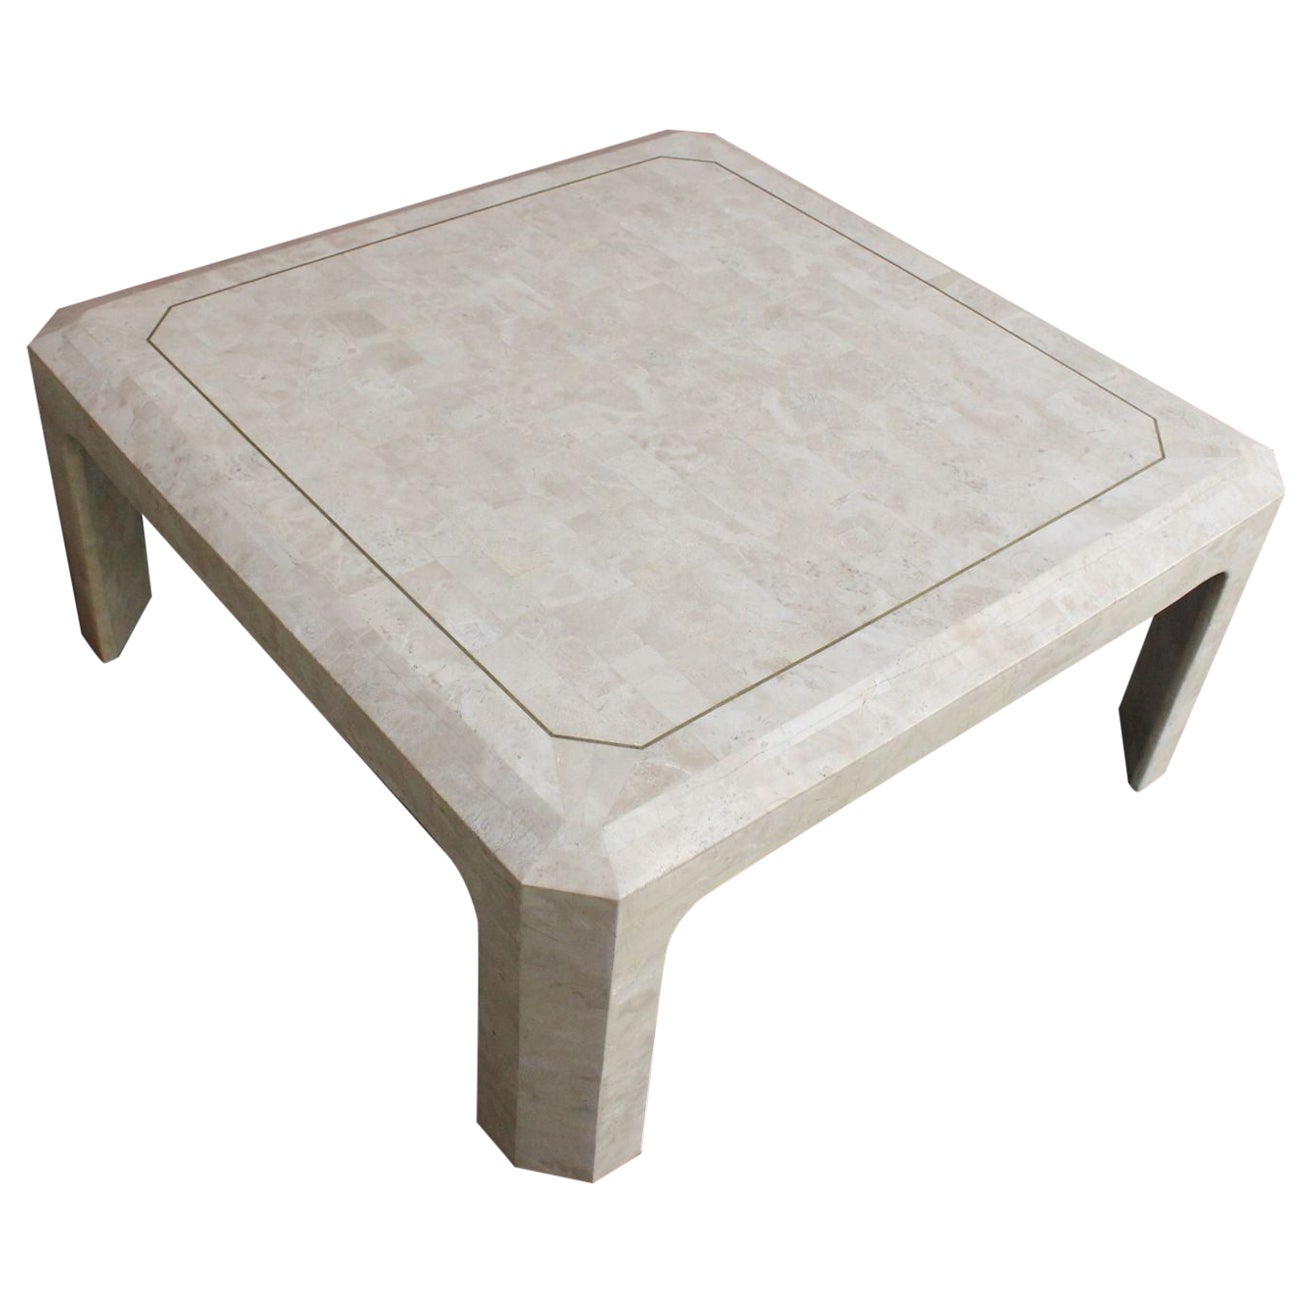 Table basse carrée Maitland Smith en pierre tessellée avec incrustation en laiton